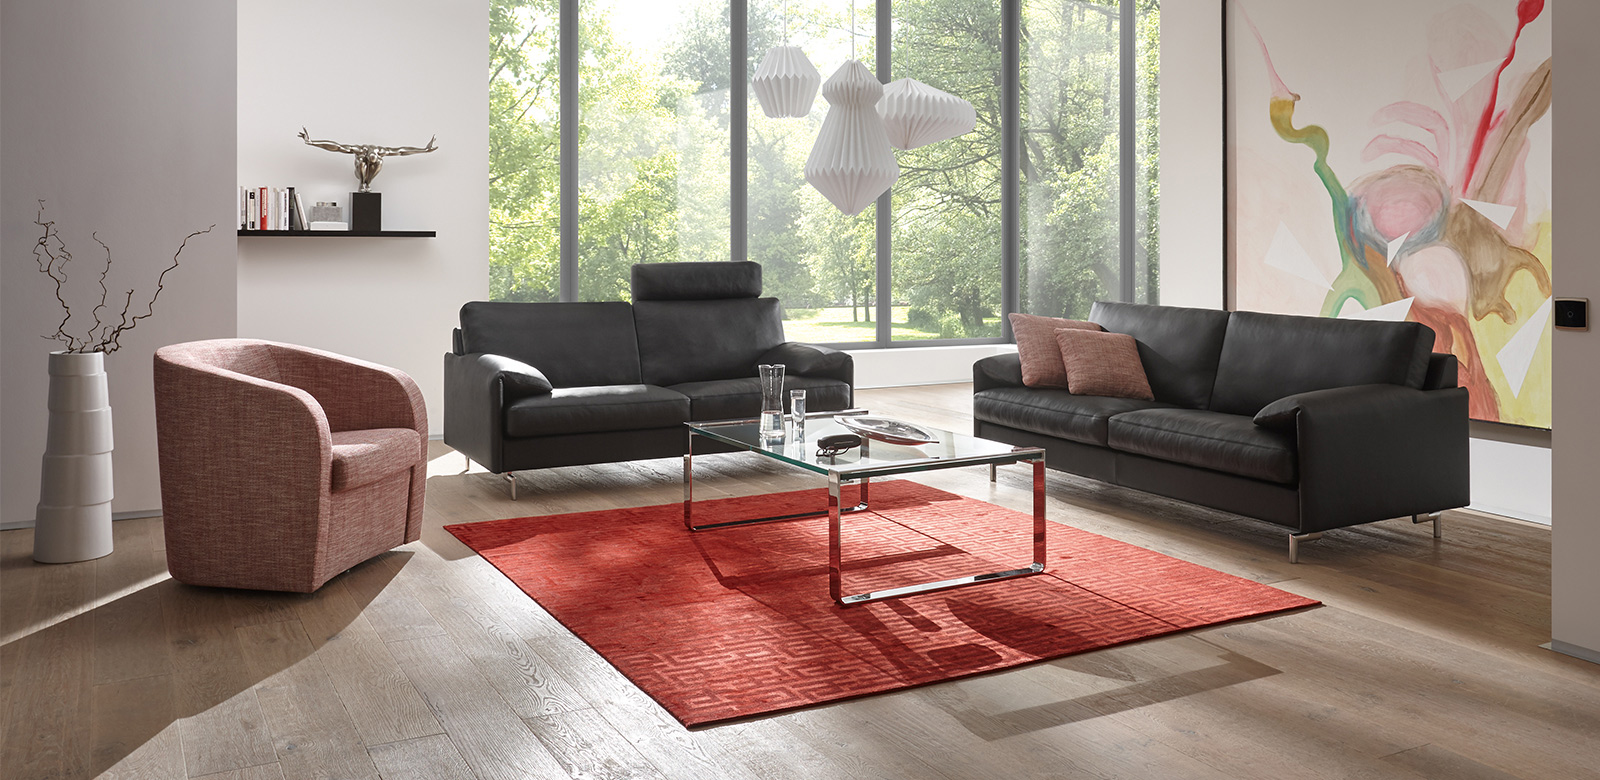 Zwei CL880 Sofas mit schwarzem Leder, Sessel in hellrotem Stoff und eckigem Glas-Couchtisch auf rotem Teppich in modernem Wohnzimmer mit Terrasse